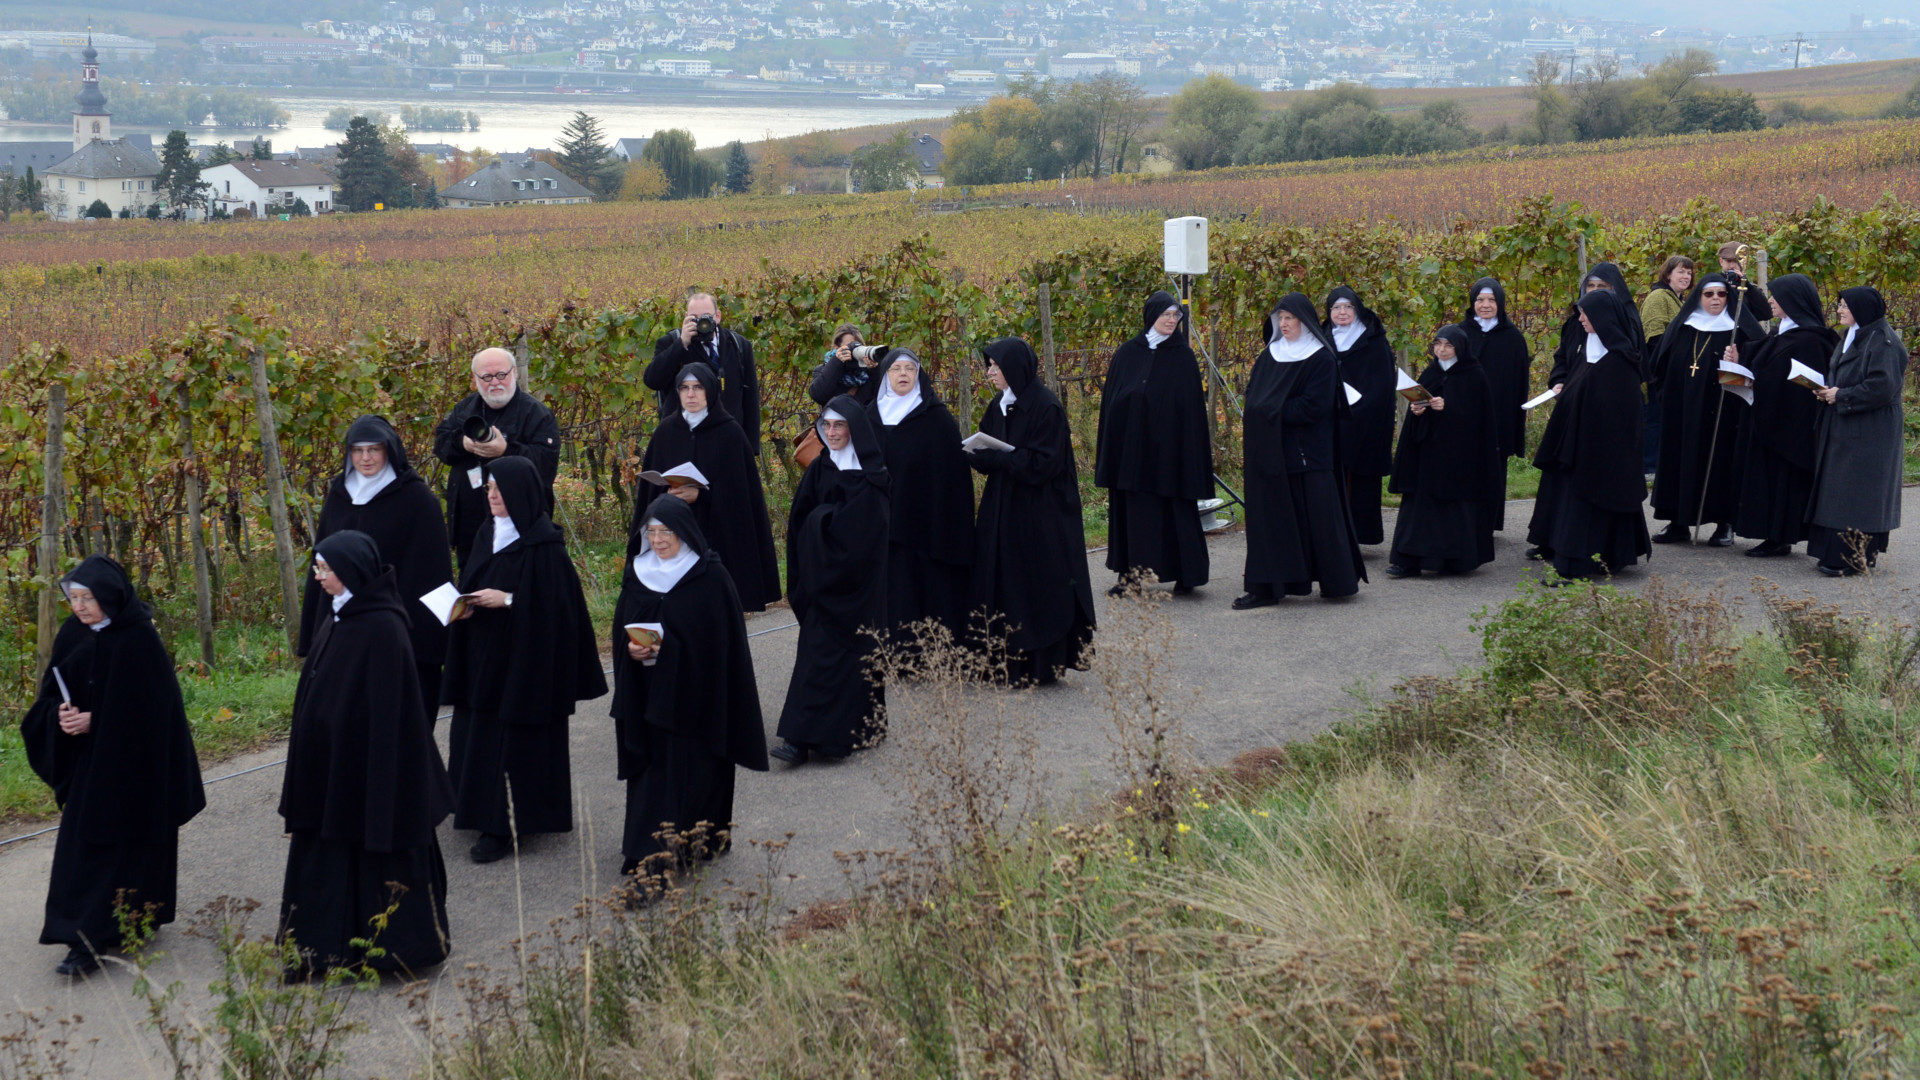 Prozession zu Ehren von Hildegard von Bingen in Eibingen am 1. November 2012